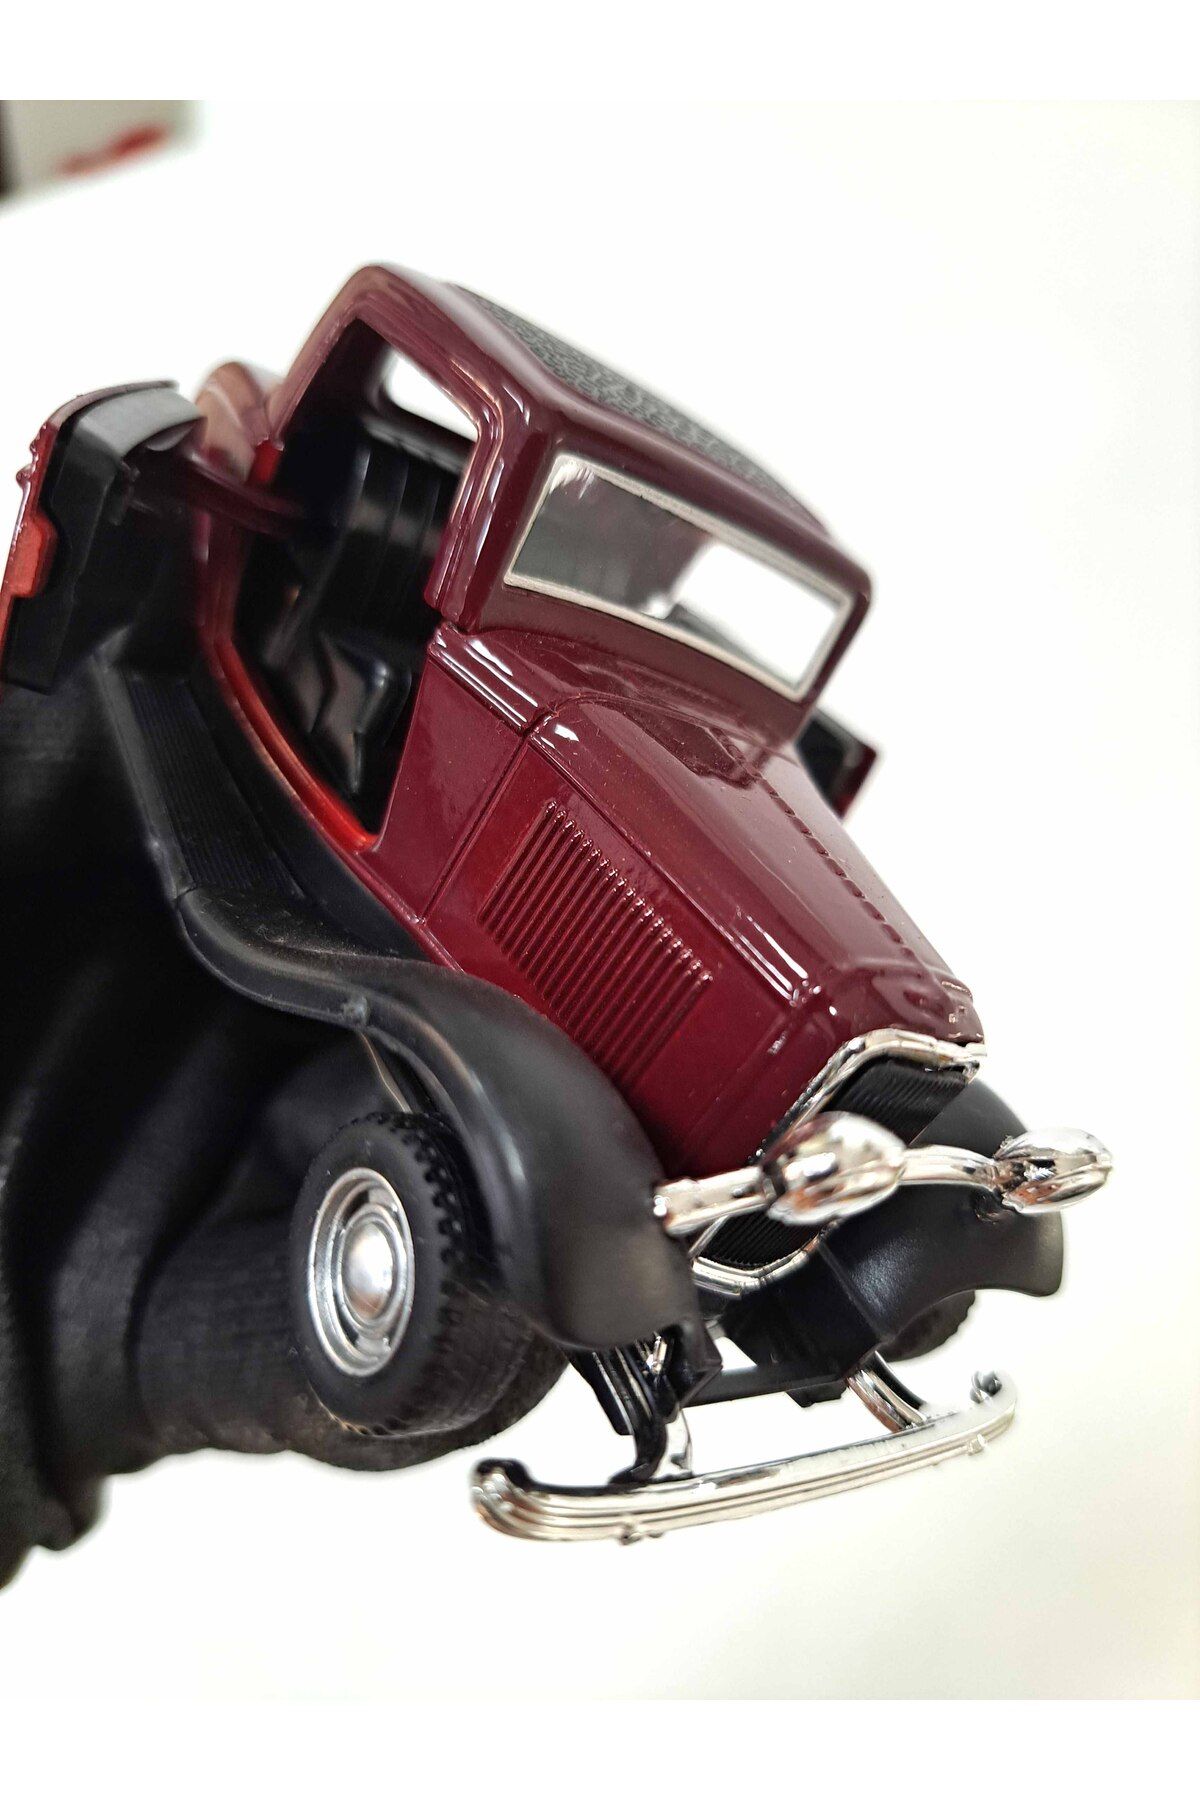 ALYTOYS Klasik Araba Nostalji Vitrin Koleksiyon Metal araba çek-bırak Antika Kapılar açılır 5,3x13cm